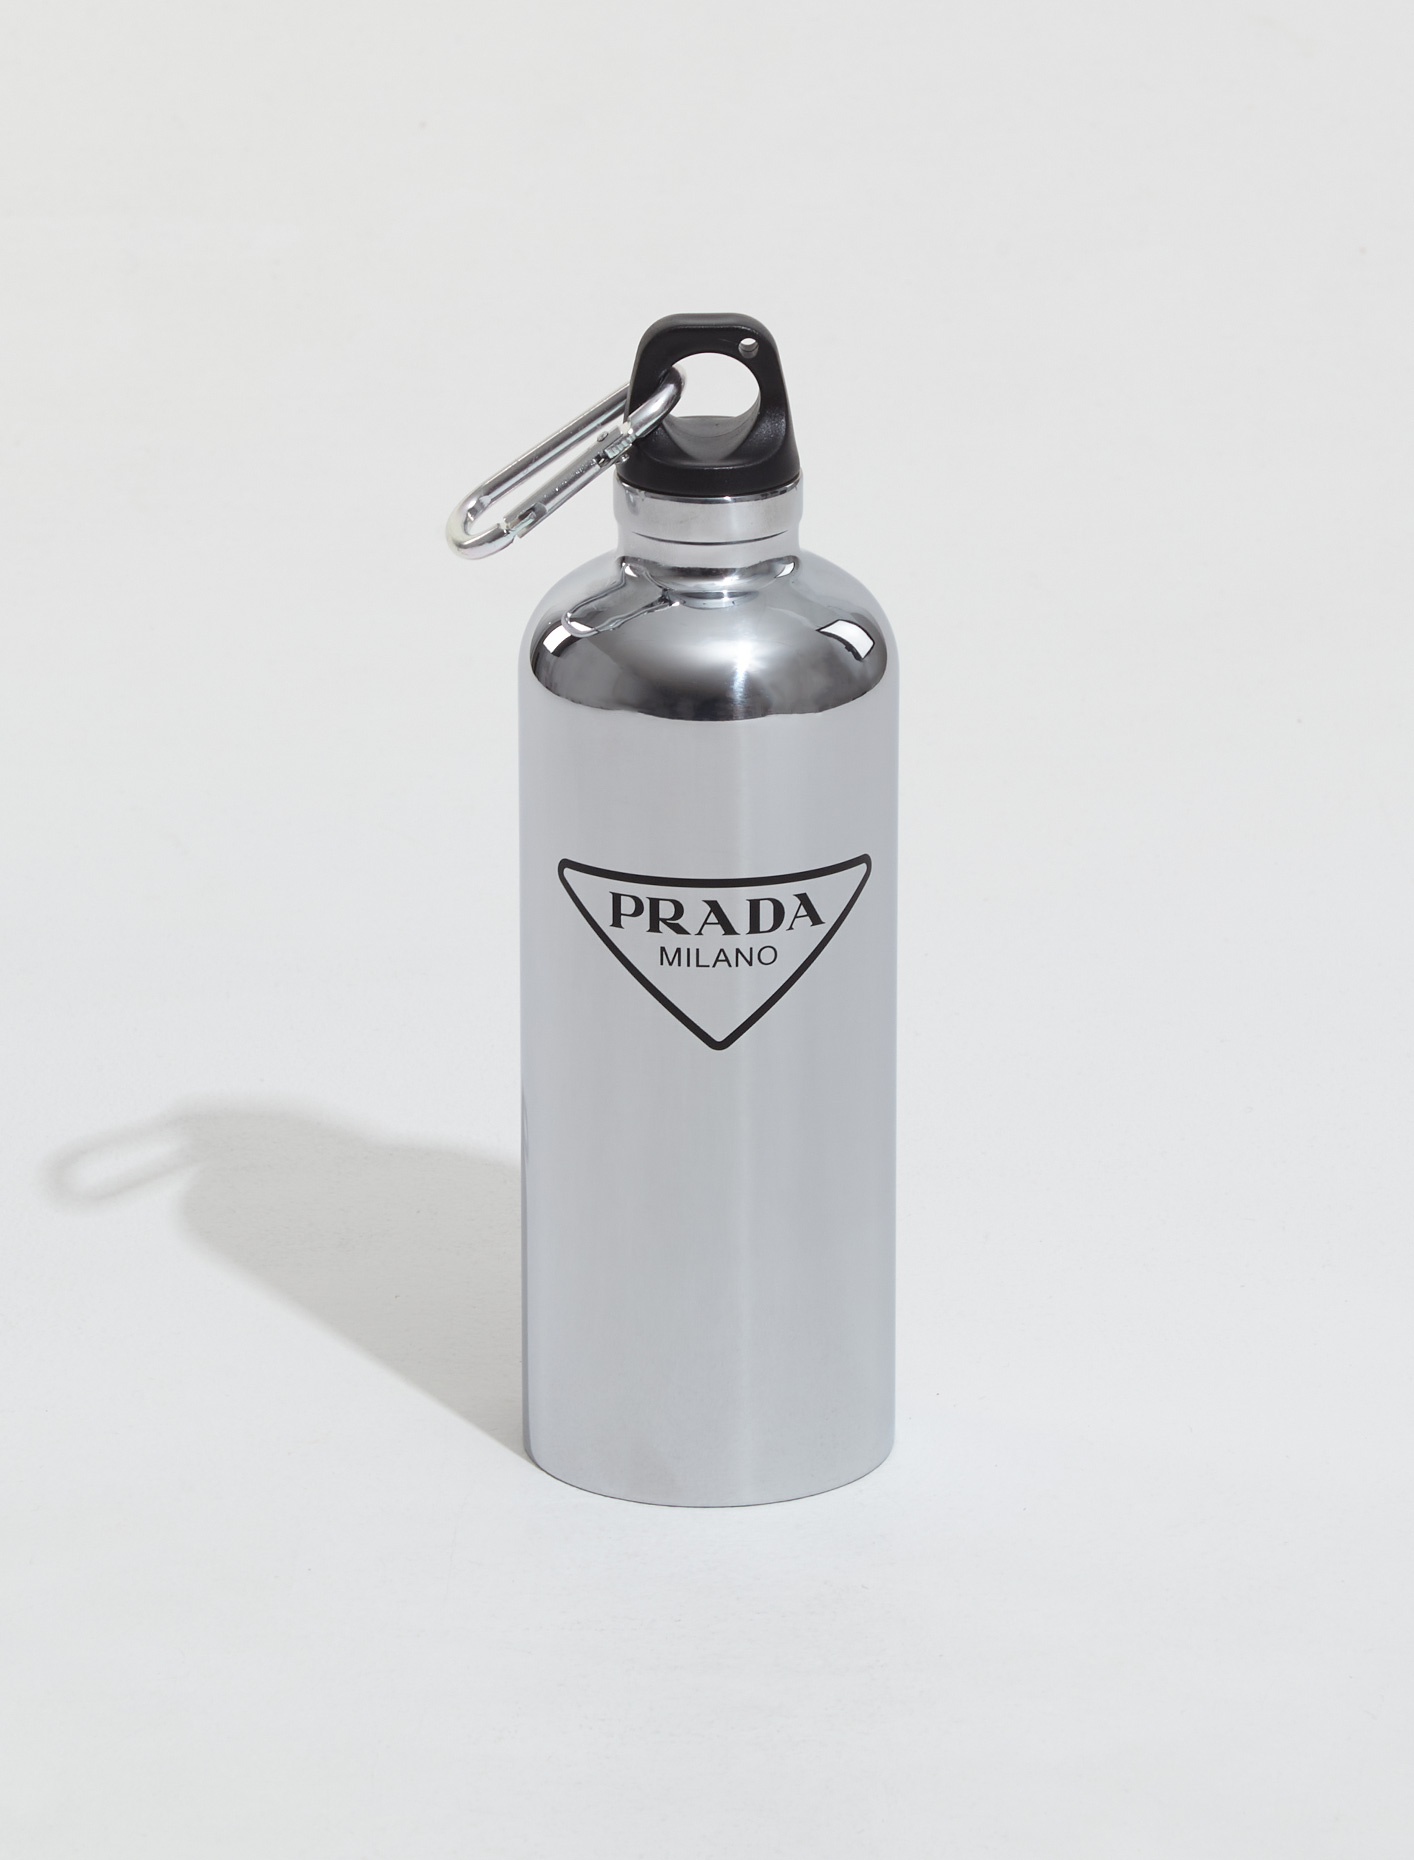 Prada Stainless Steel Water Bottle in Silver | Voo Store Berlin | Worldwide  Shipping